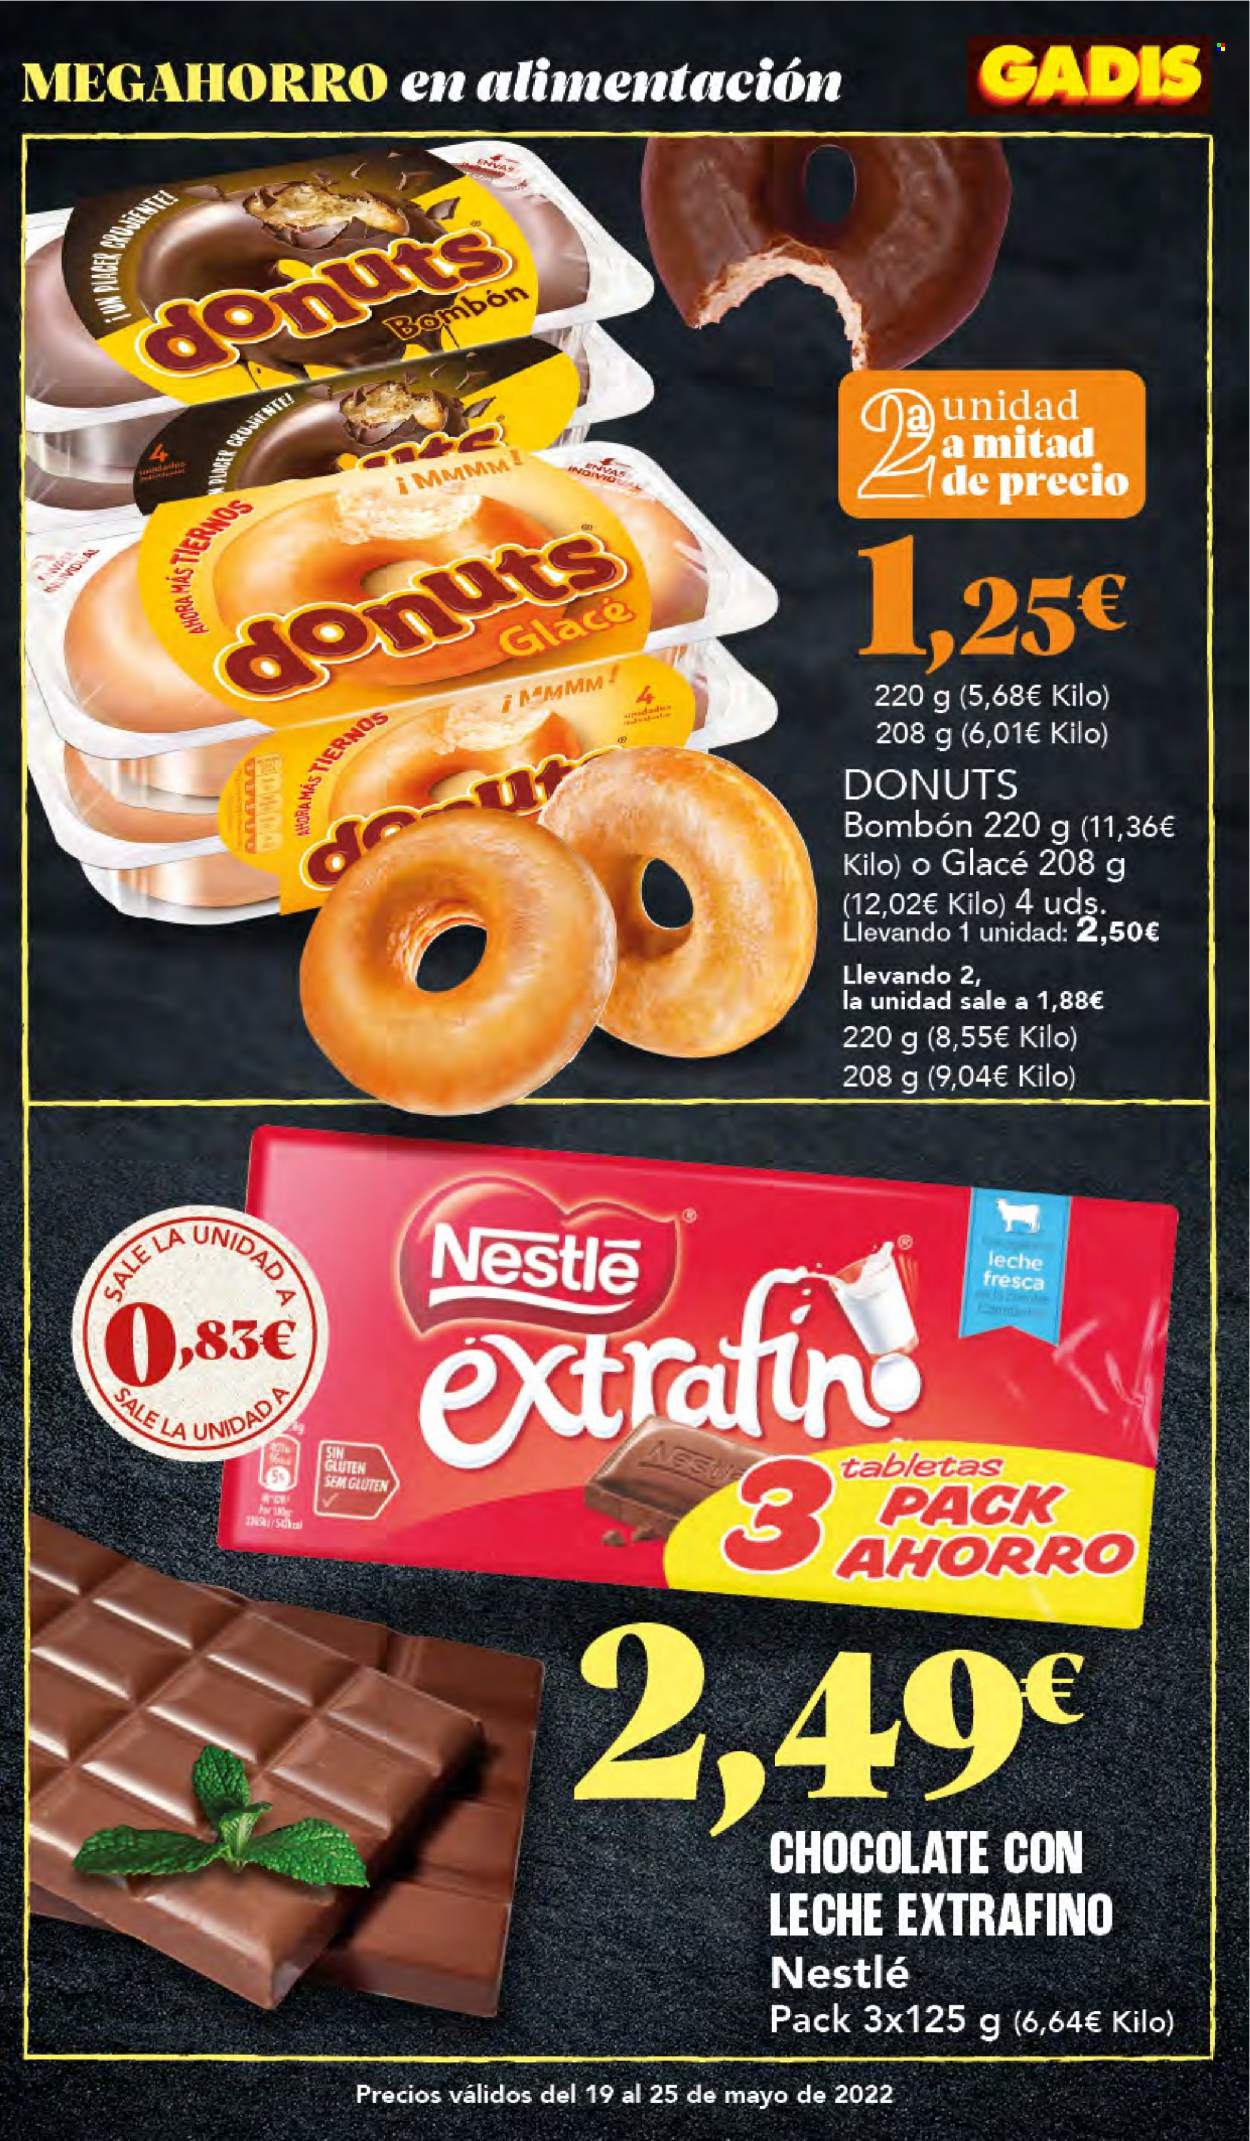 thumbnail - Folleto actual Gadis - 19/05/22 - 25/05/22 - Ventas - donut, chocolate, bombones, Nestlé. Página 13.